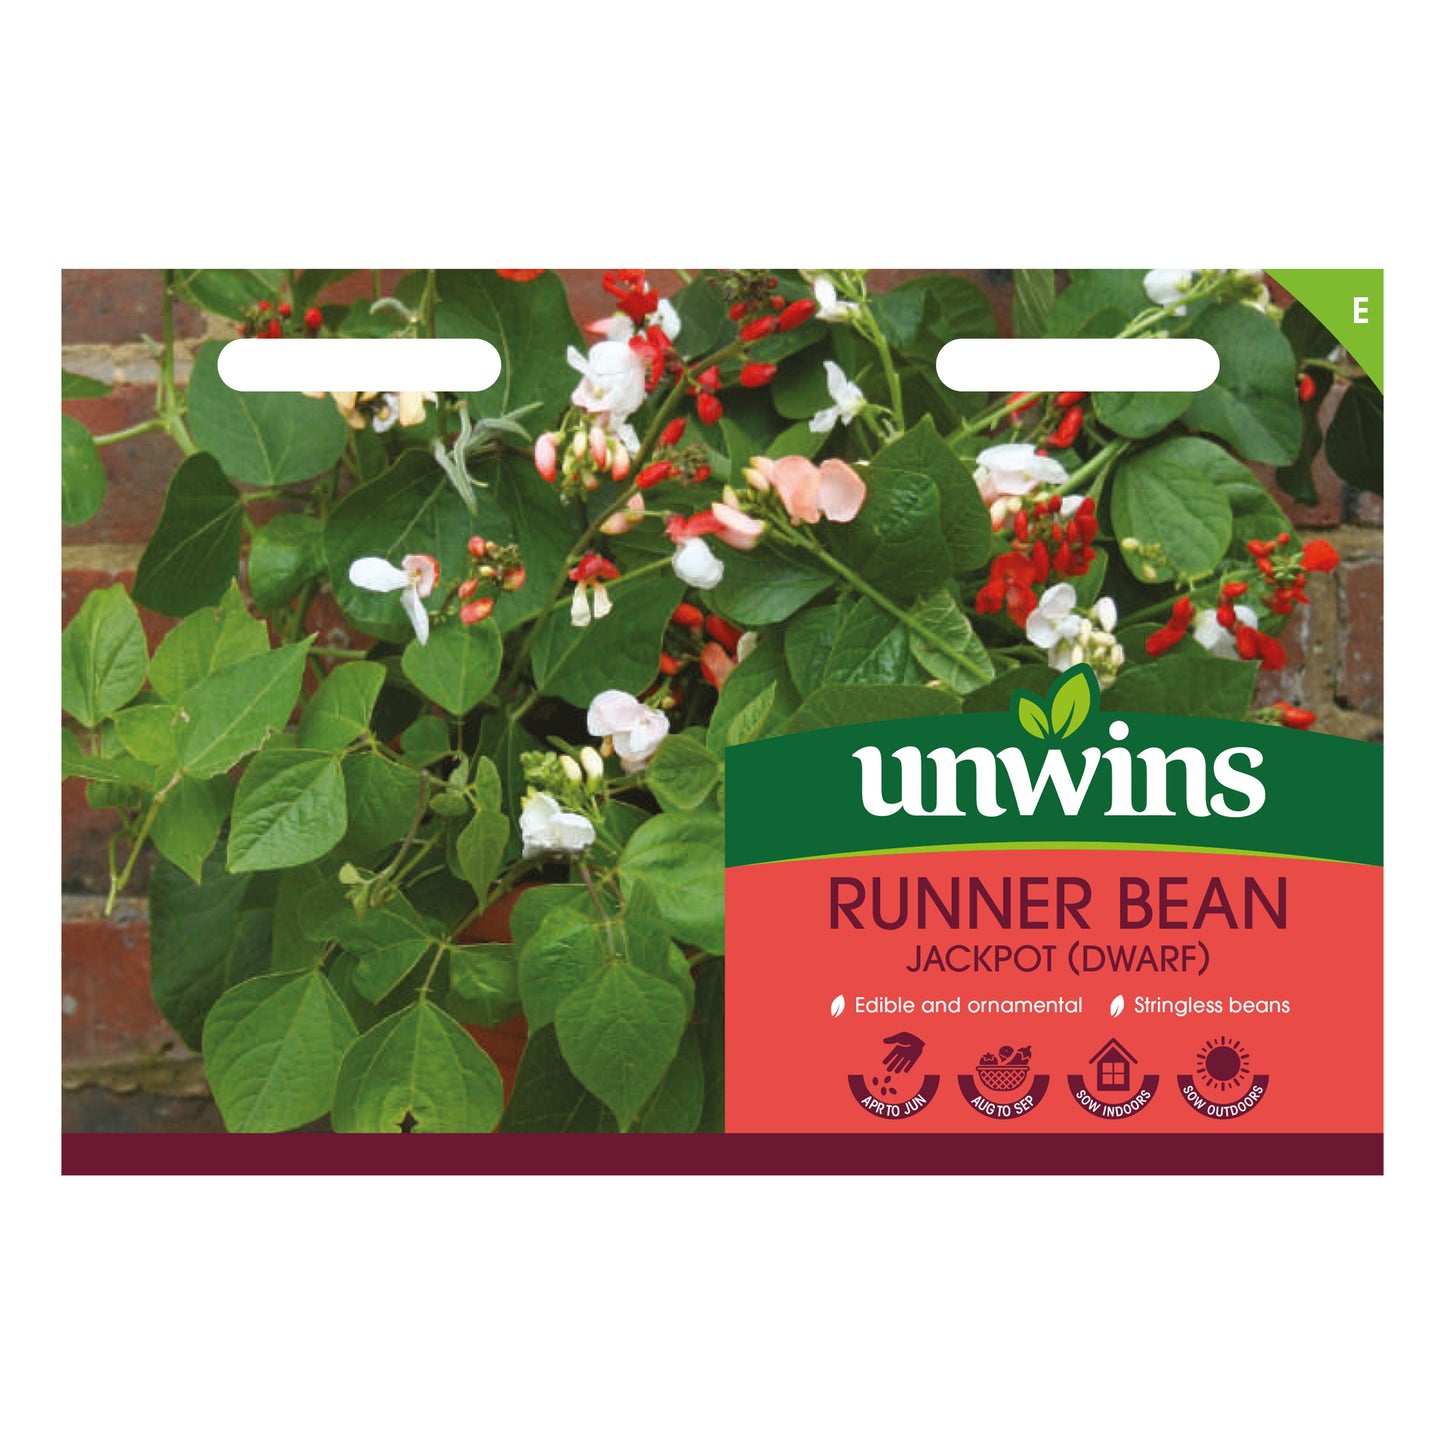 Unwins Dwarf Runner Bean Jackpot Seeds front of pack